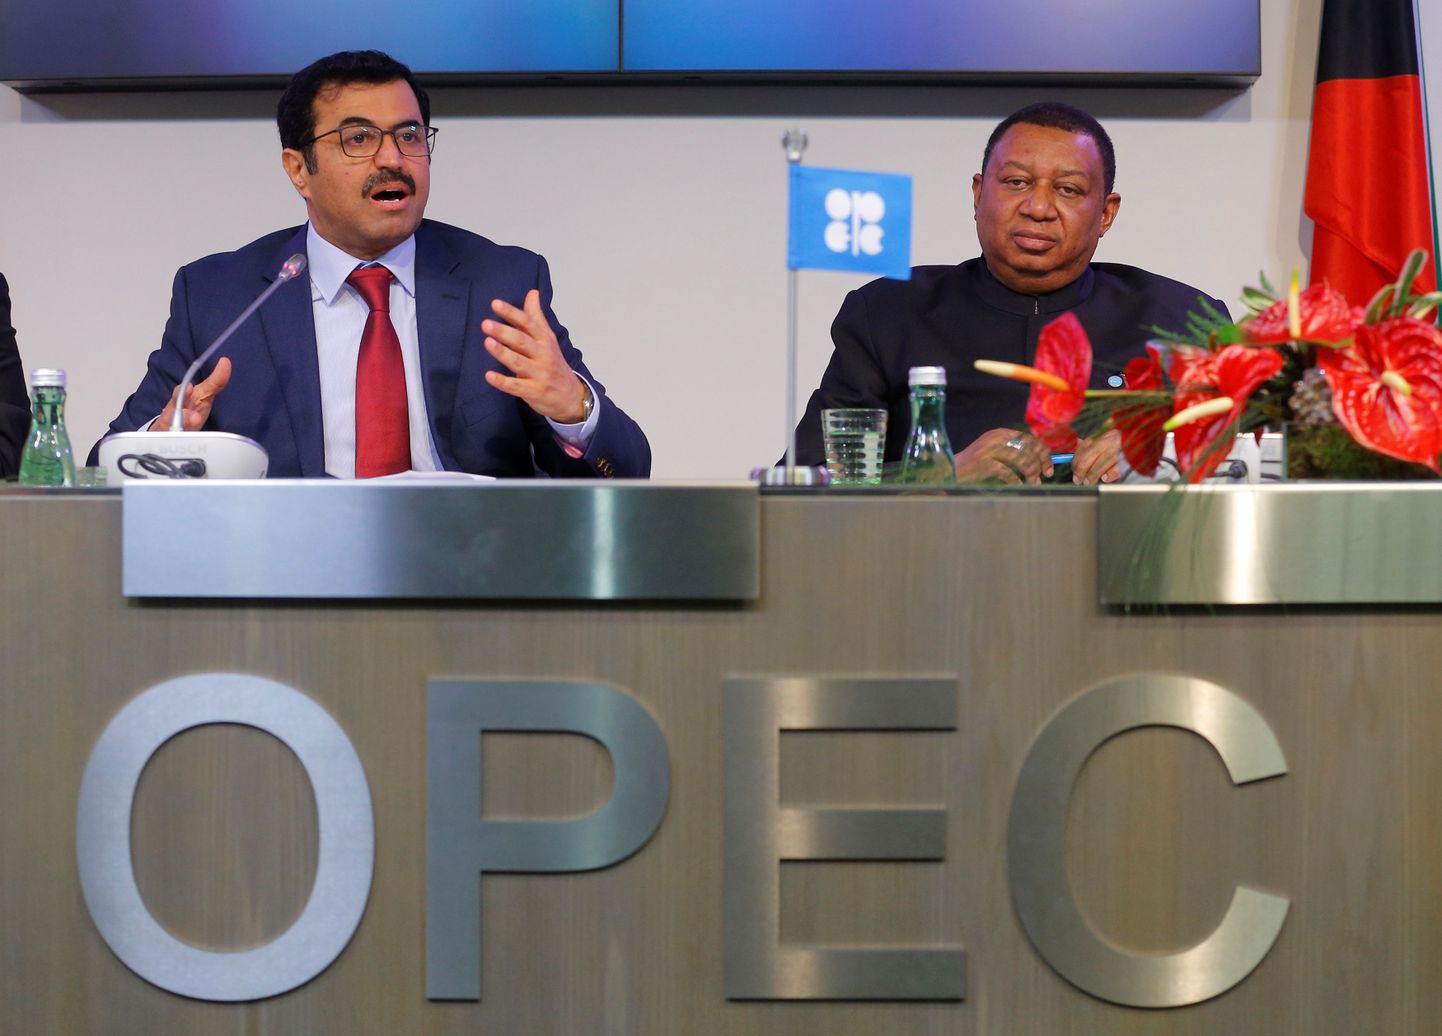 OPECi president Mohammed Saleh Al Sada ja peasekretär Mohammed Barkindo kolmapäeval Viinis pärast kartelli koosolekut peetud pressikonverentsil.